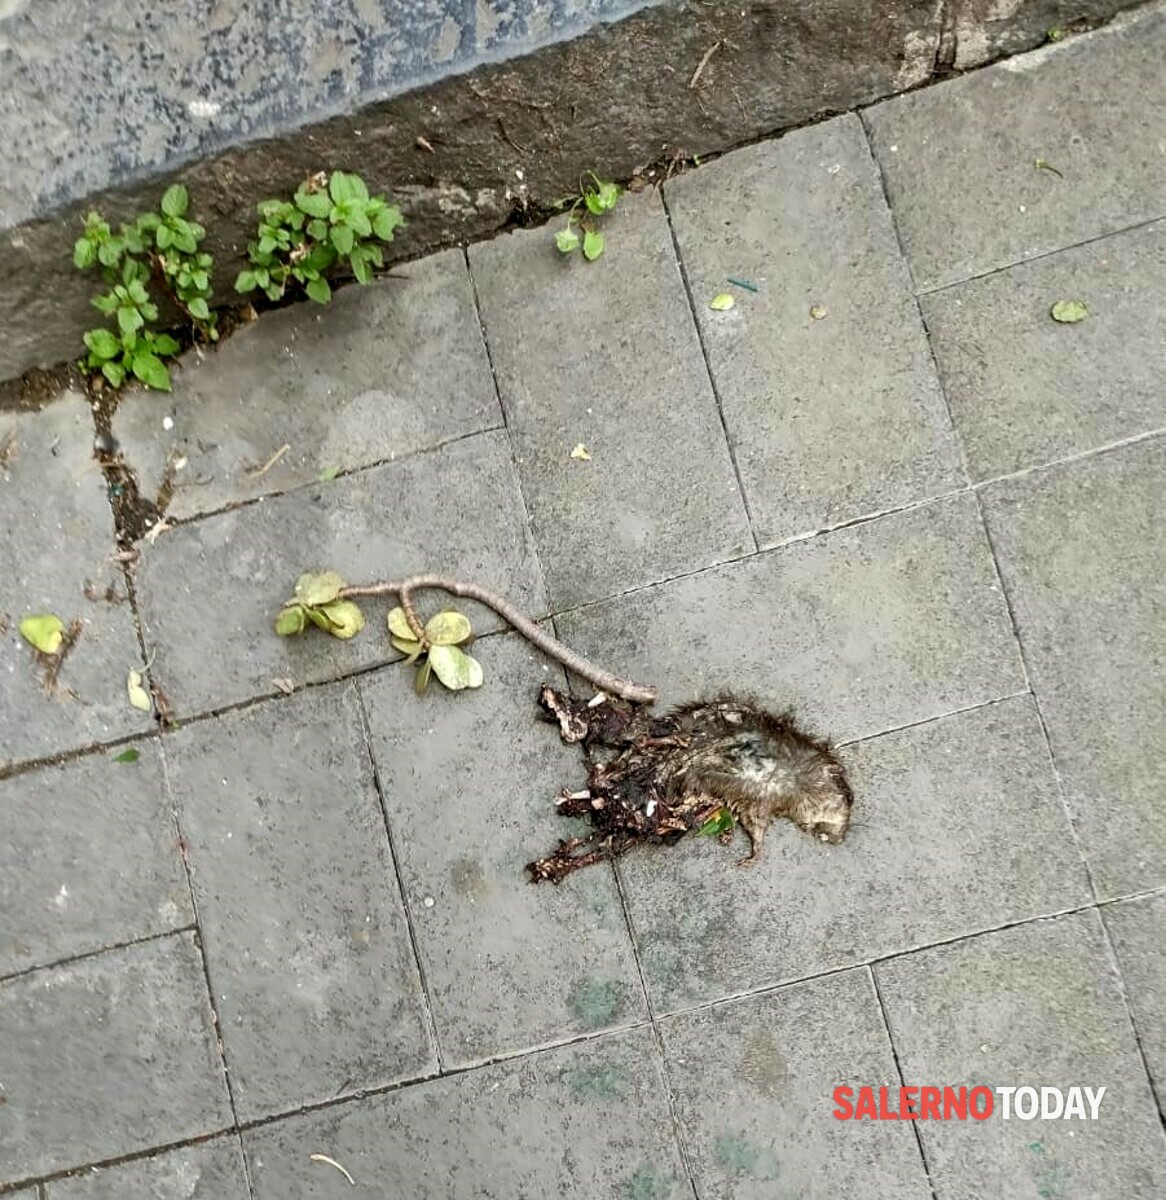 “Carcasse di topi in strada e nessuno le rimuove”: la protesta dei residenti, a Salerno